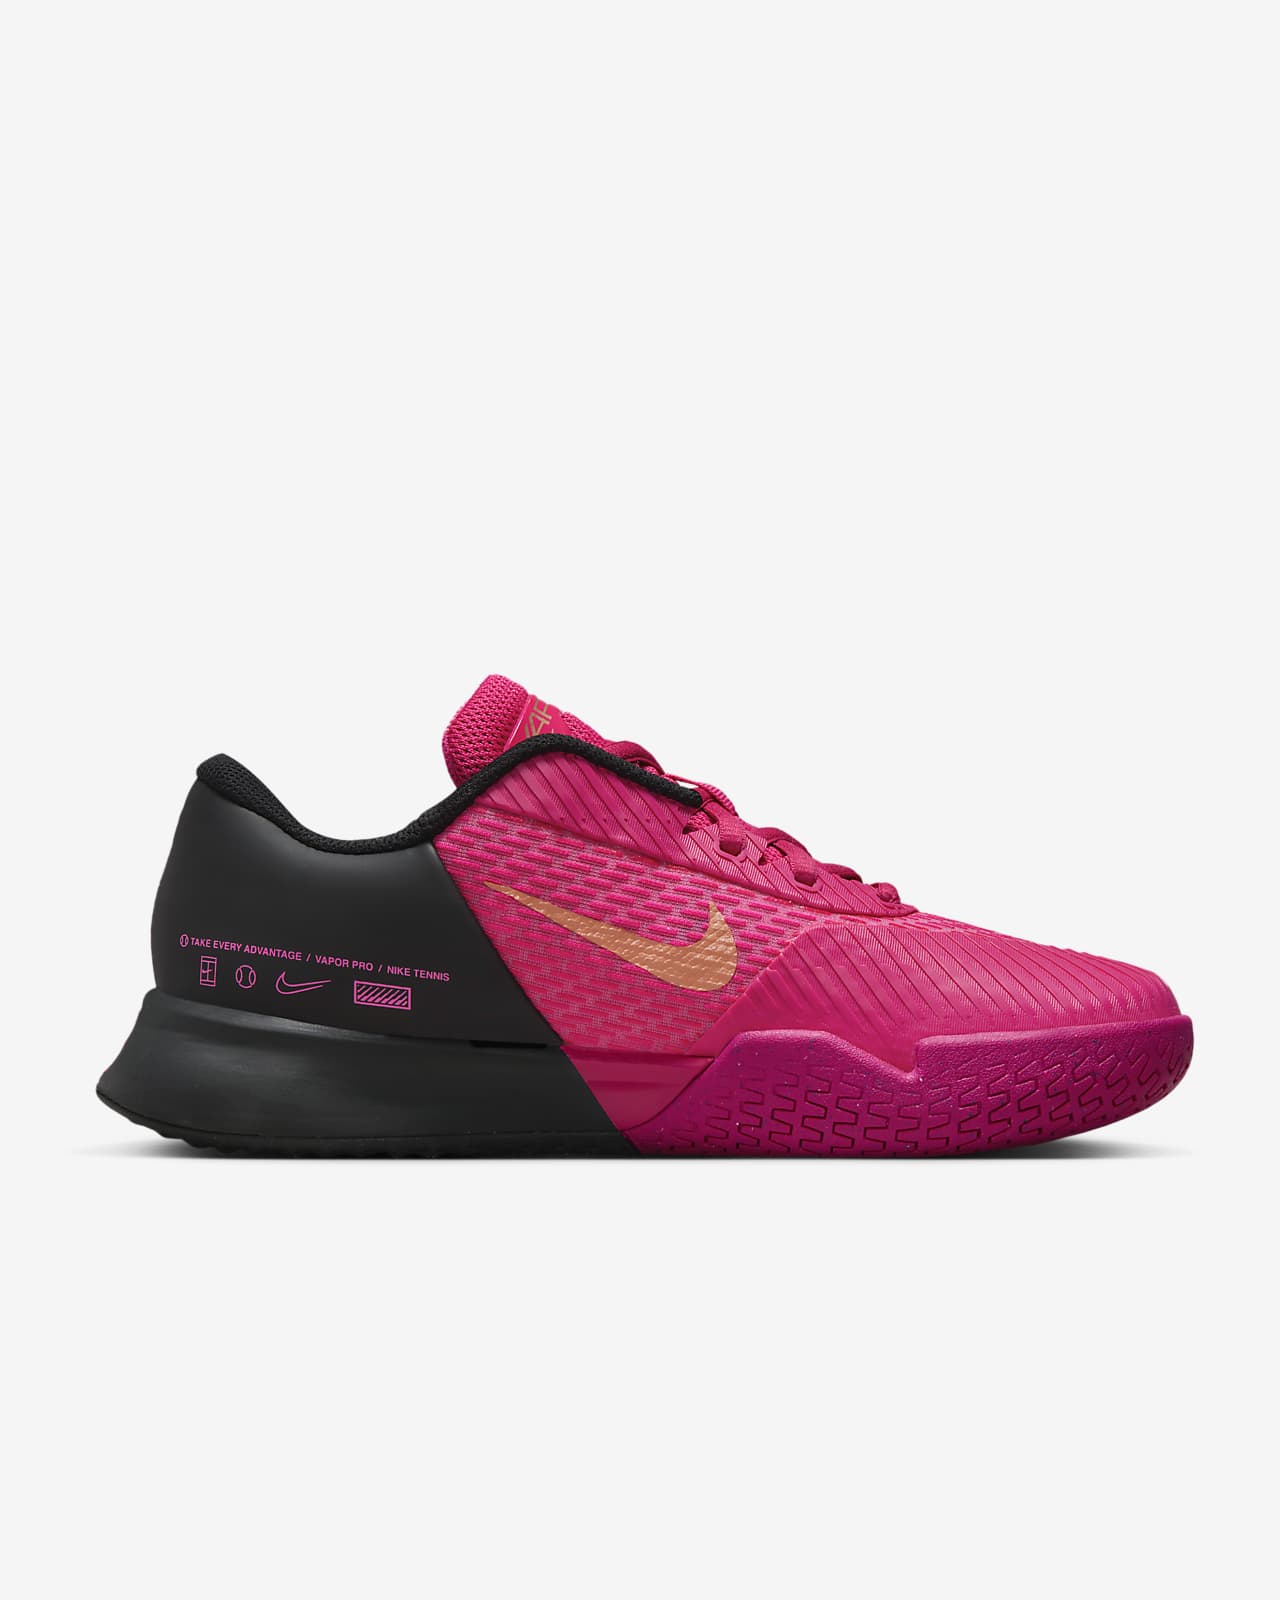 NikeCourt Air Zoom Vapor Pro 2 Premium Women's Hard Court Tennis Shoes